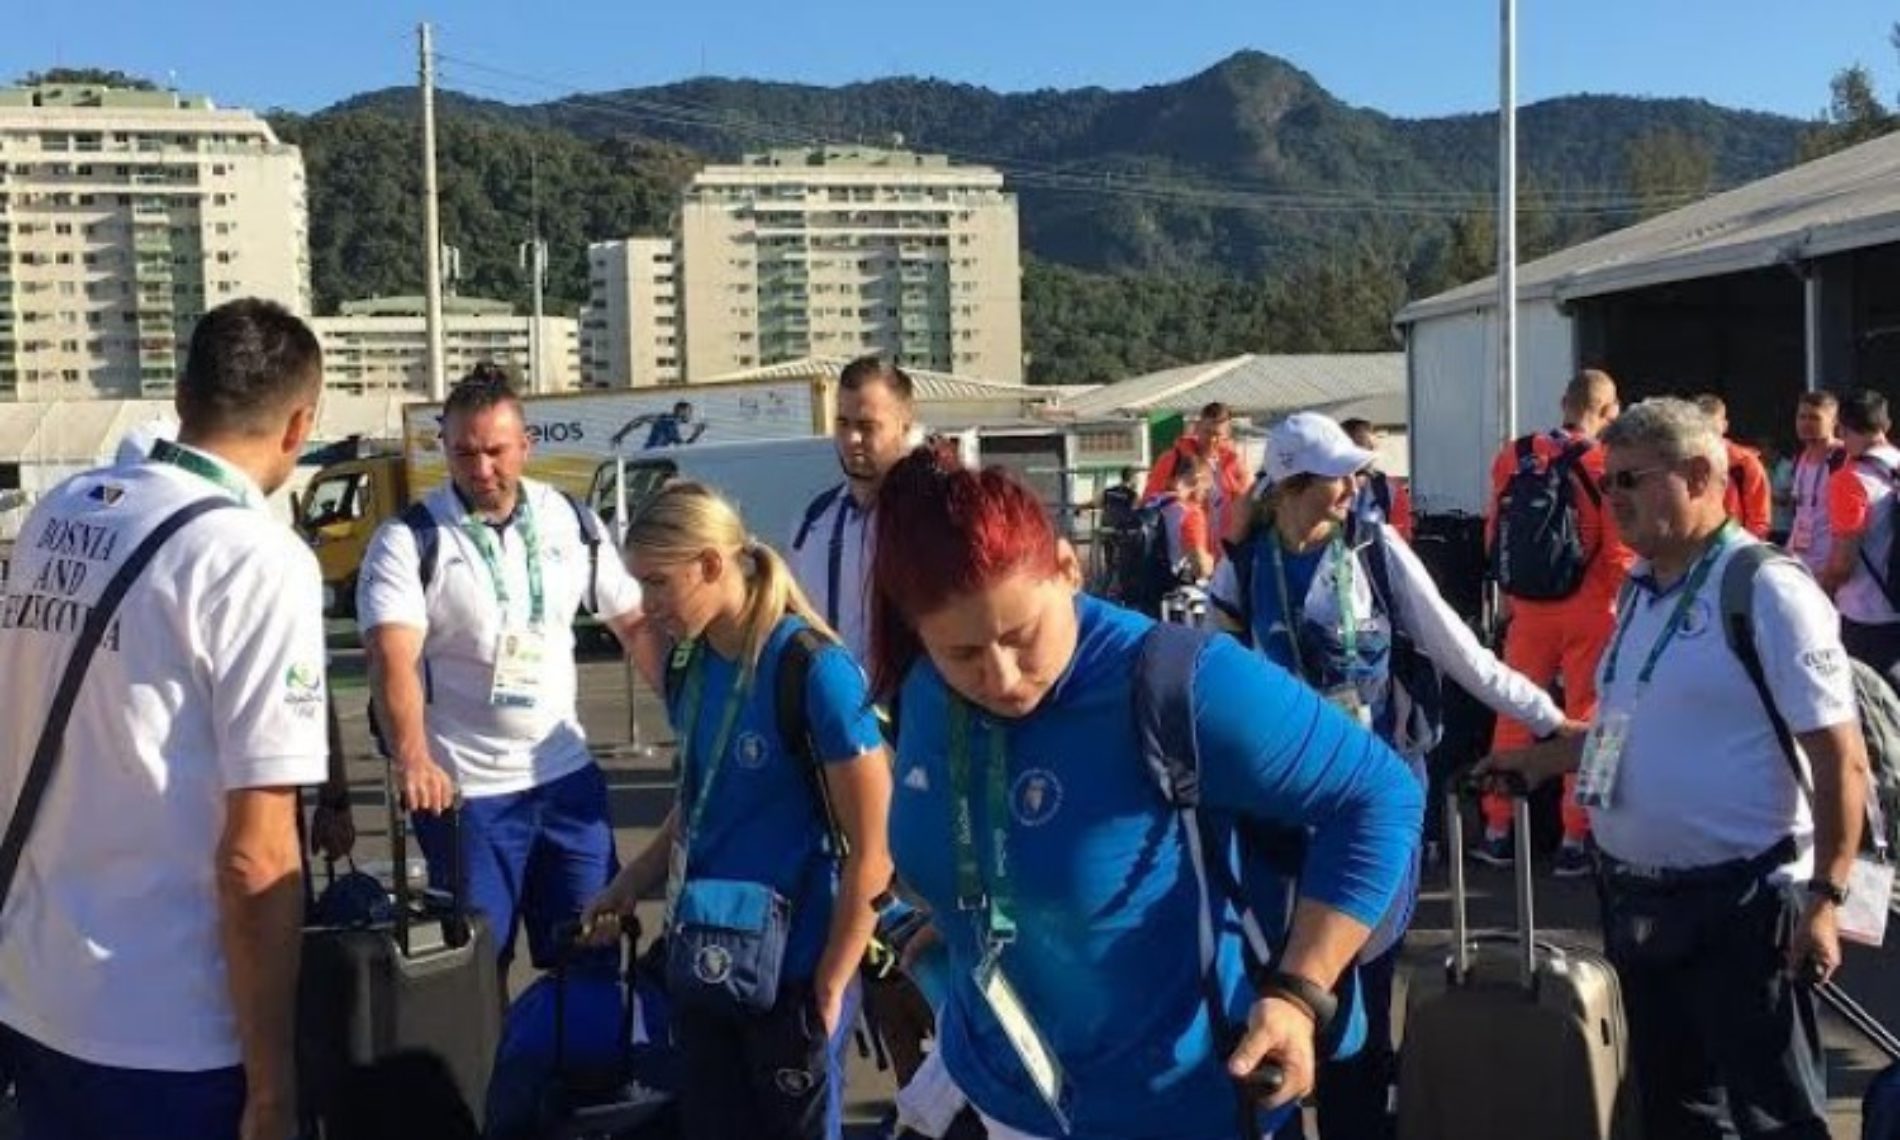 Bosanskohercegovački olimpijci doputovali u Rio de Janeiro